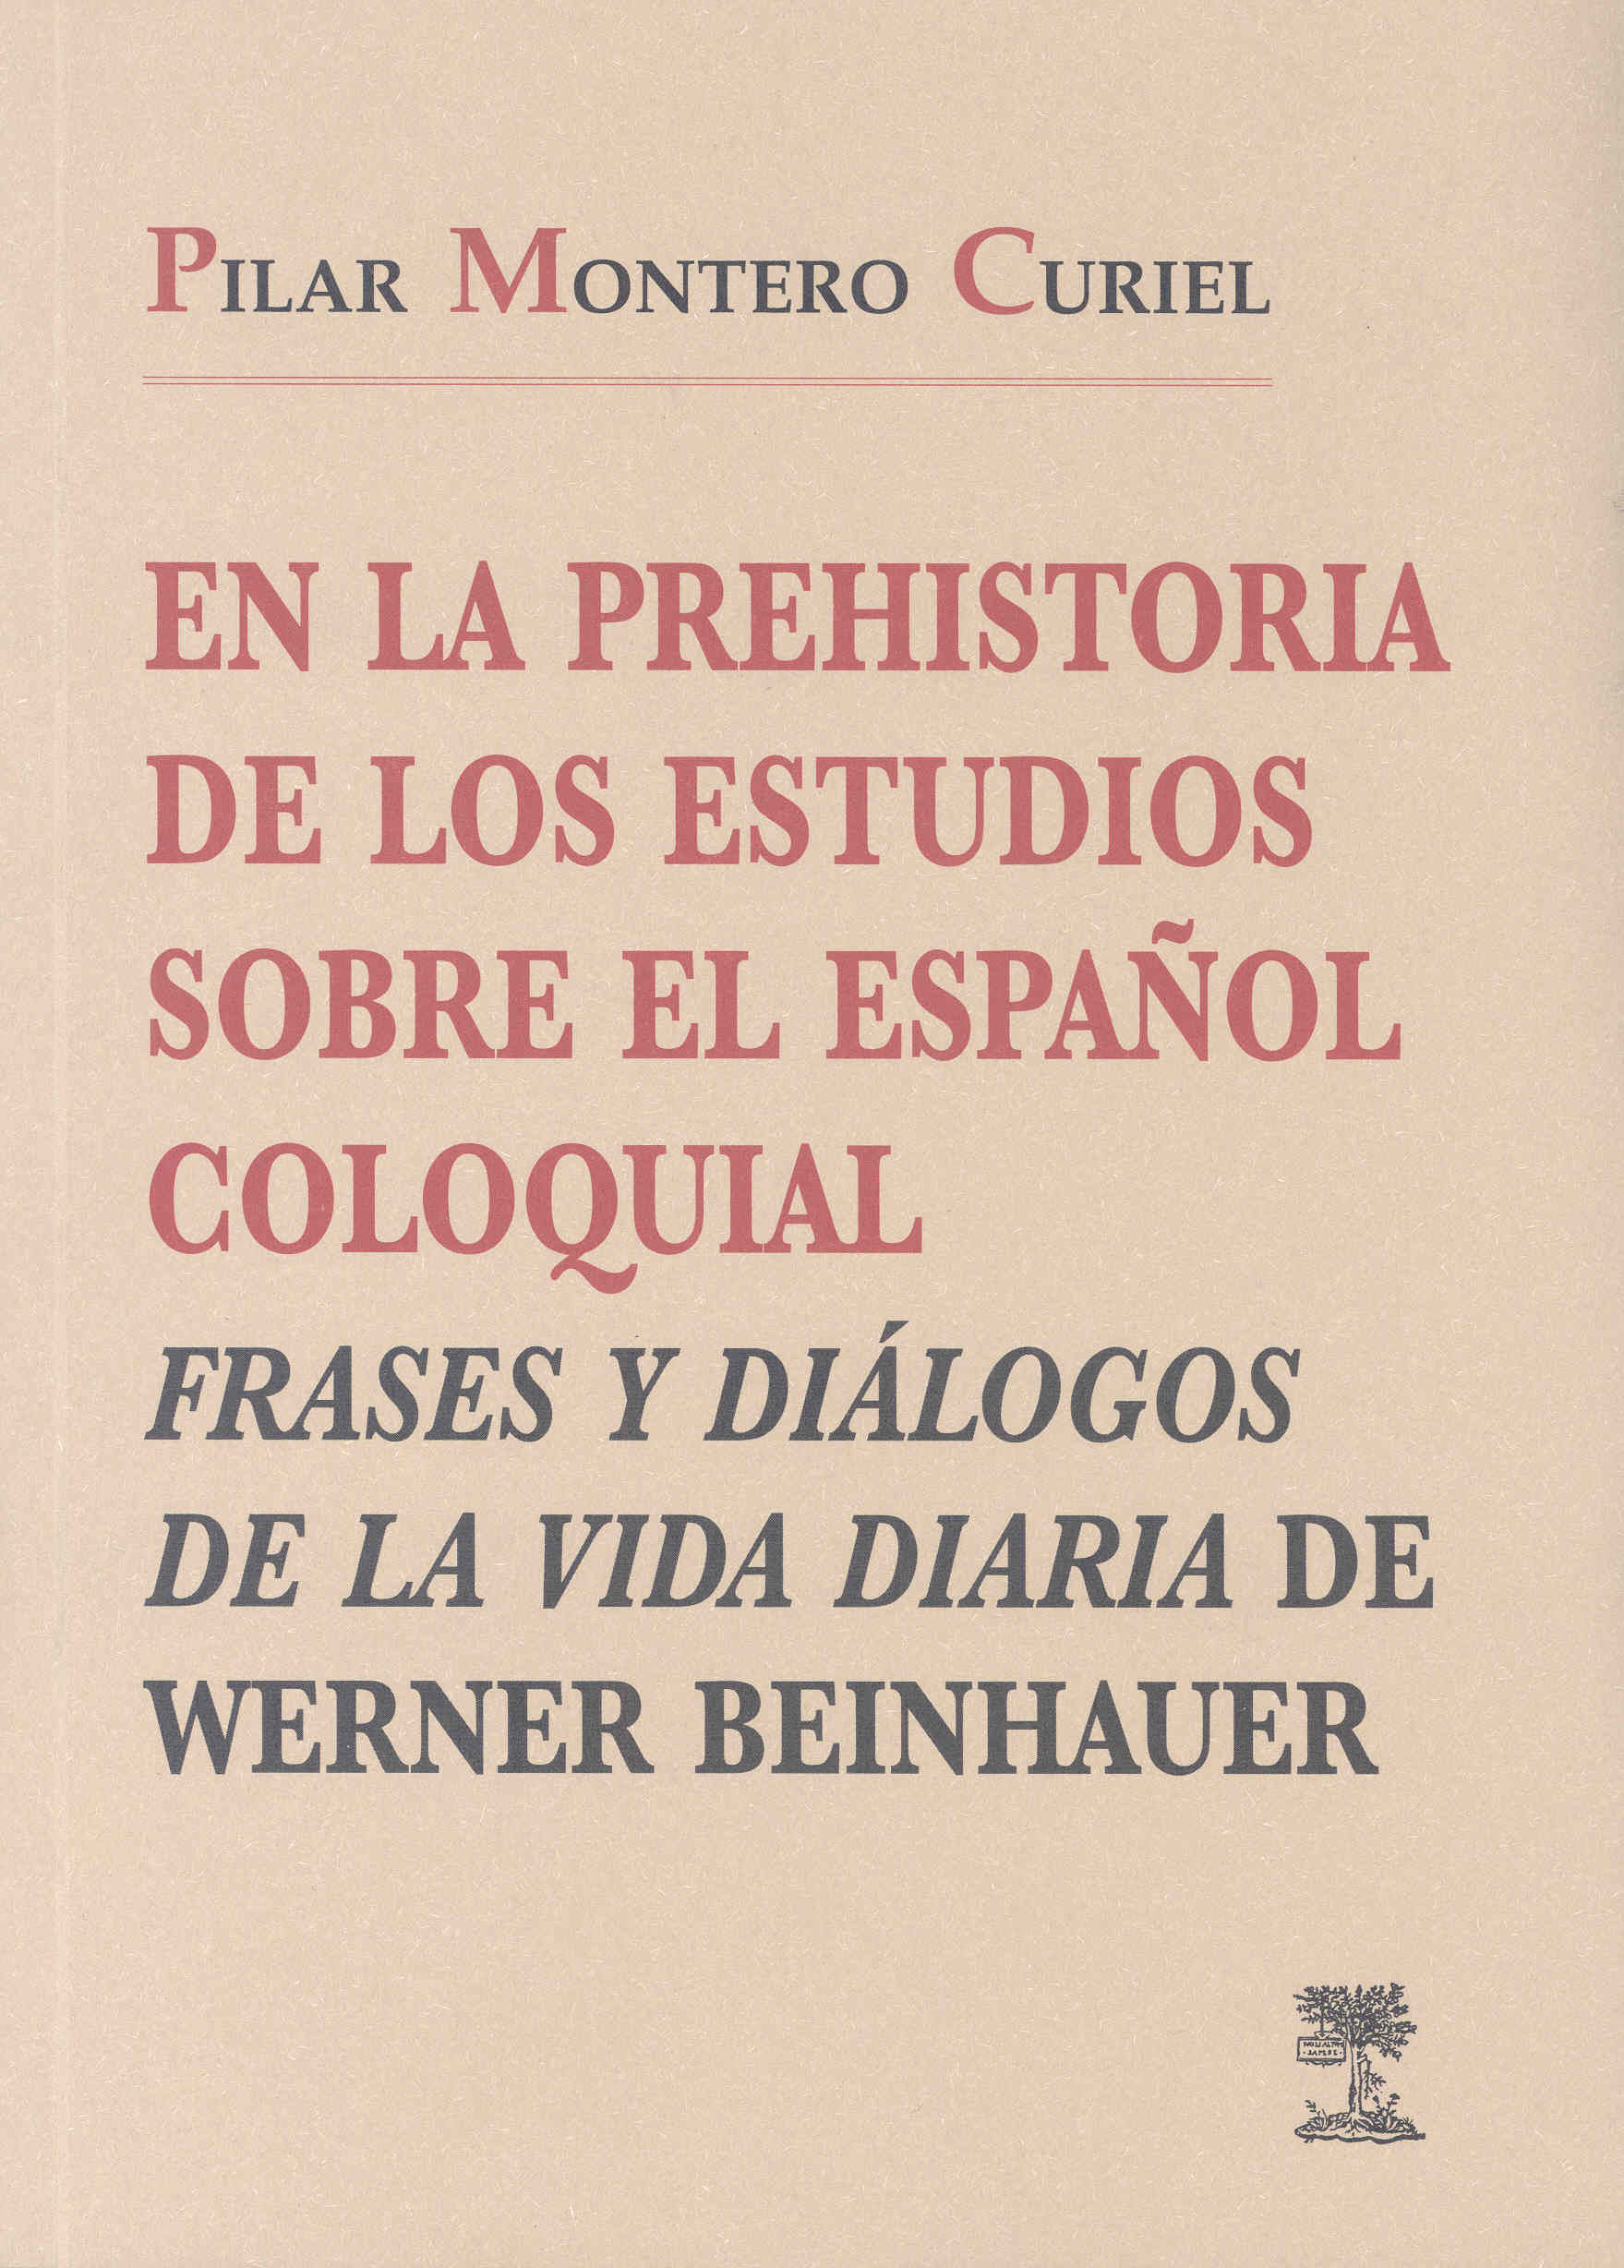 Imagen de portada del libro En la prehistoria de los estudios sobre el español coloquial, "Frases y diálogos de la vida diaria" de Werner Beinhauer